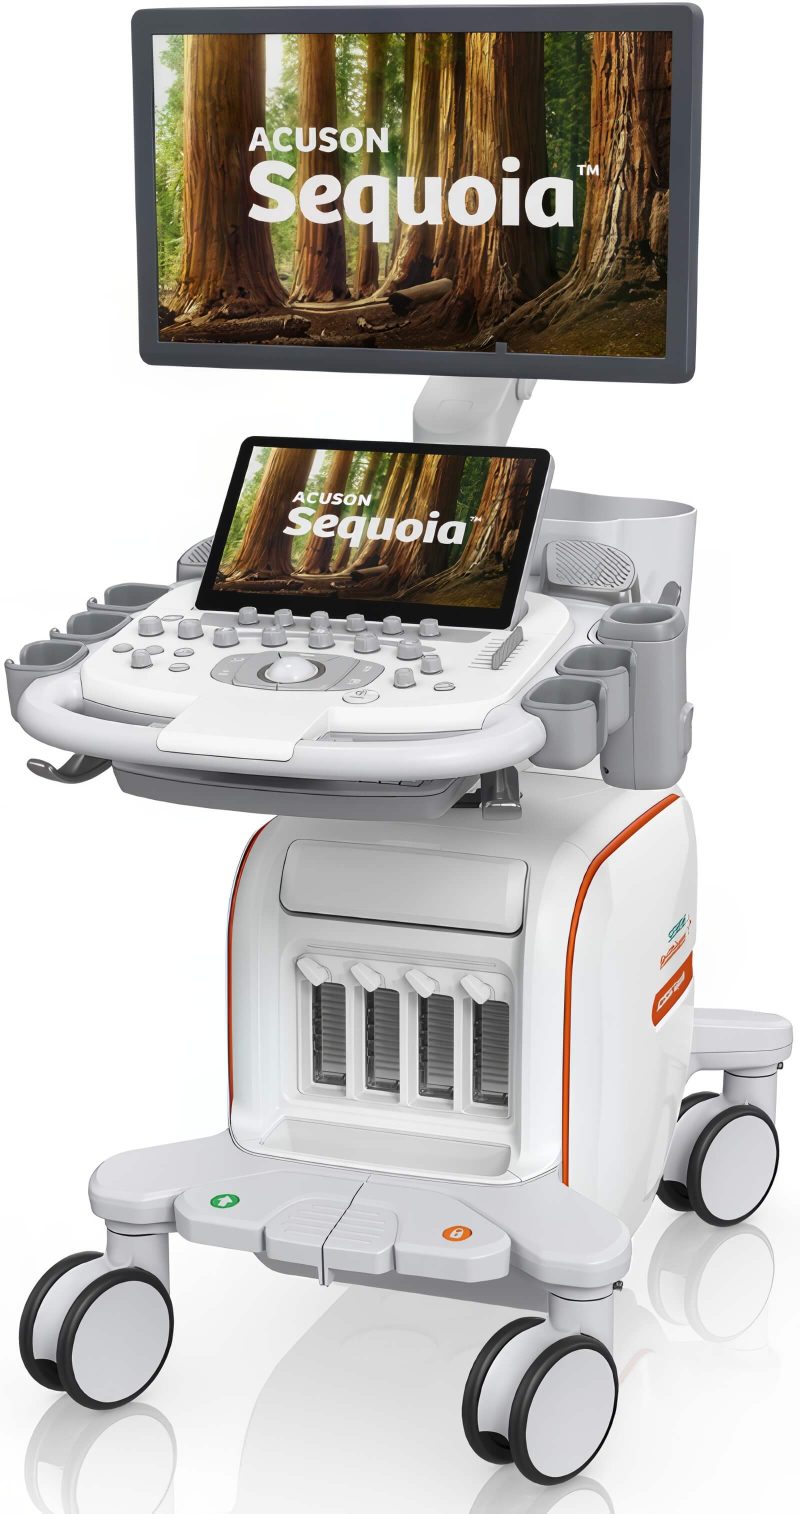 Siemens ACUSON Sequoia Ultrasound System